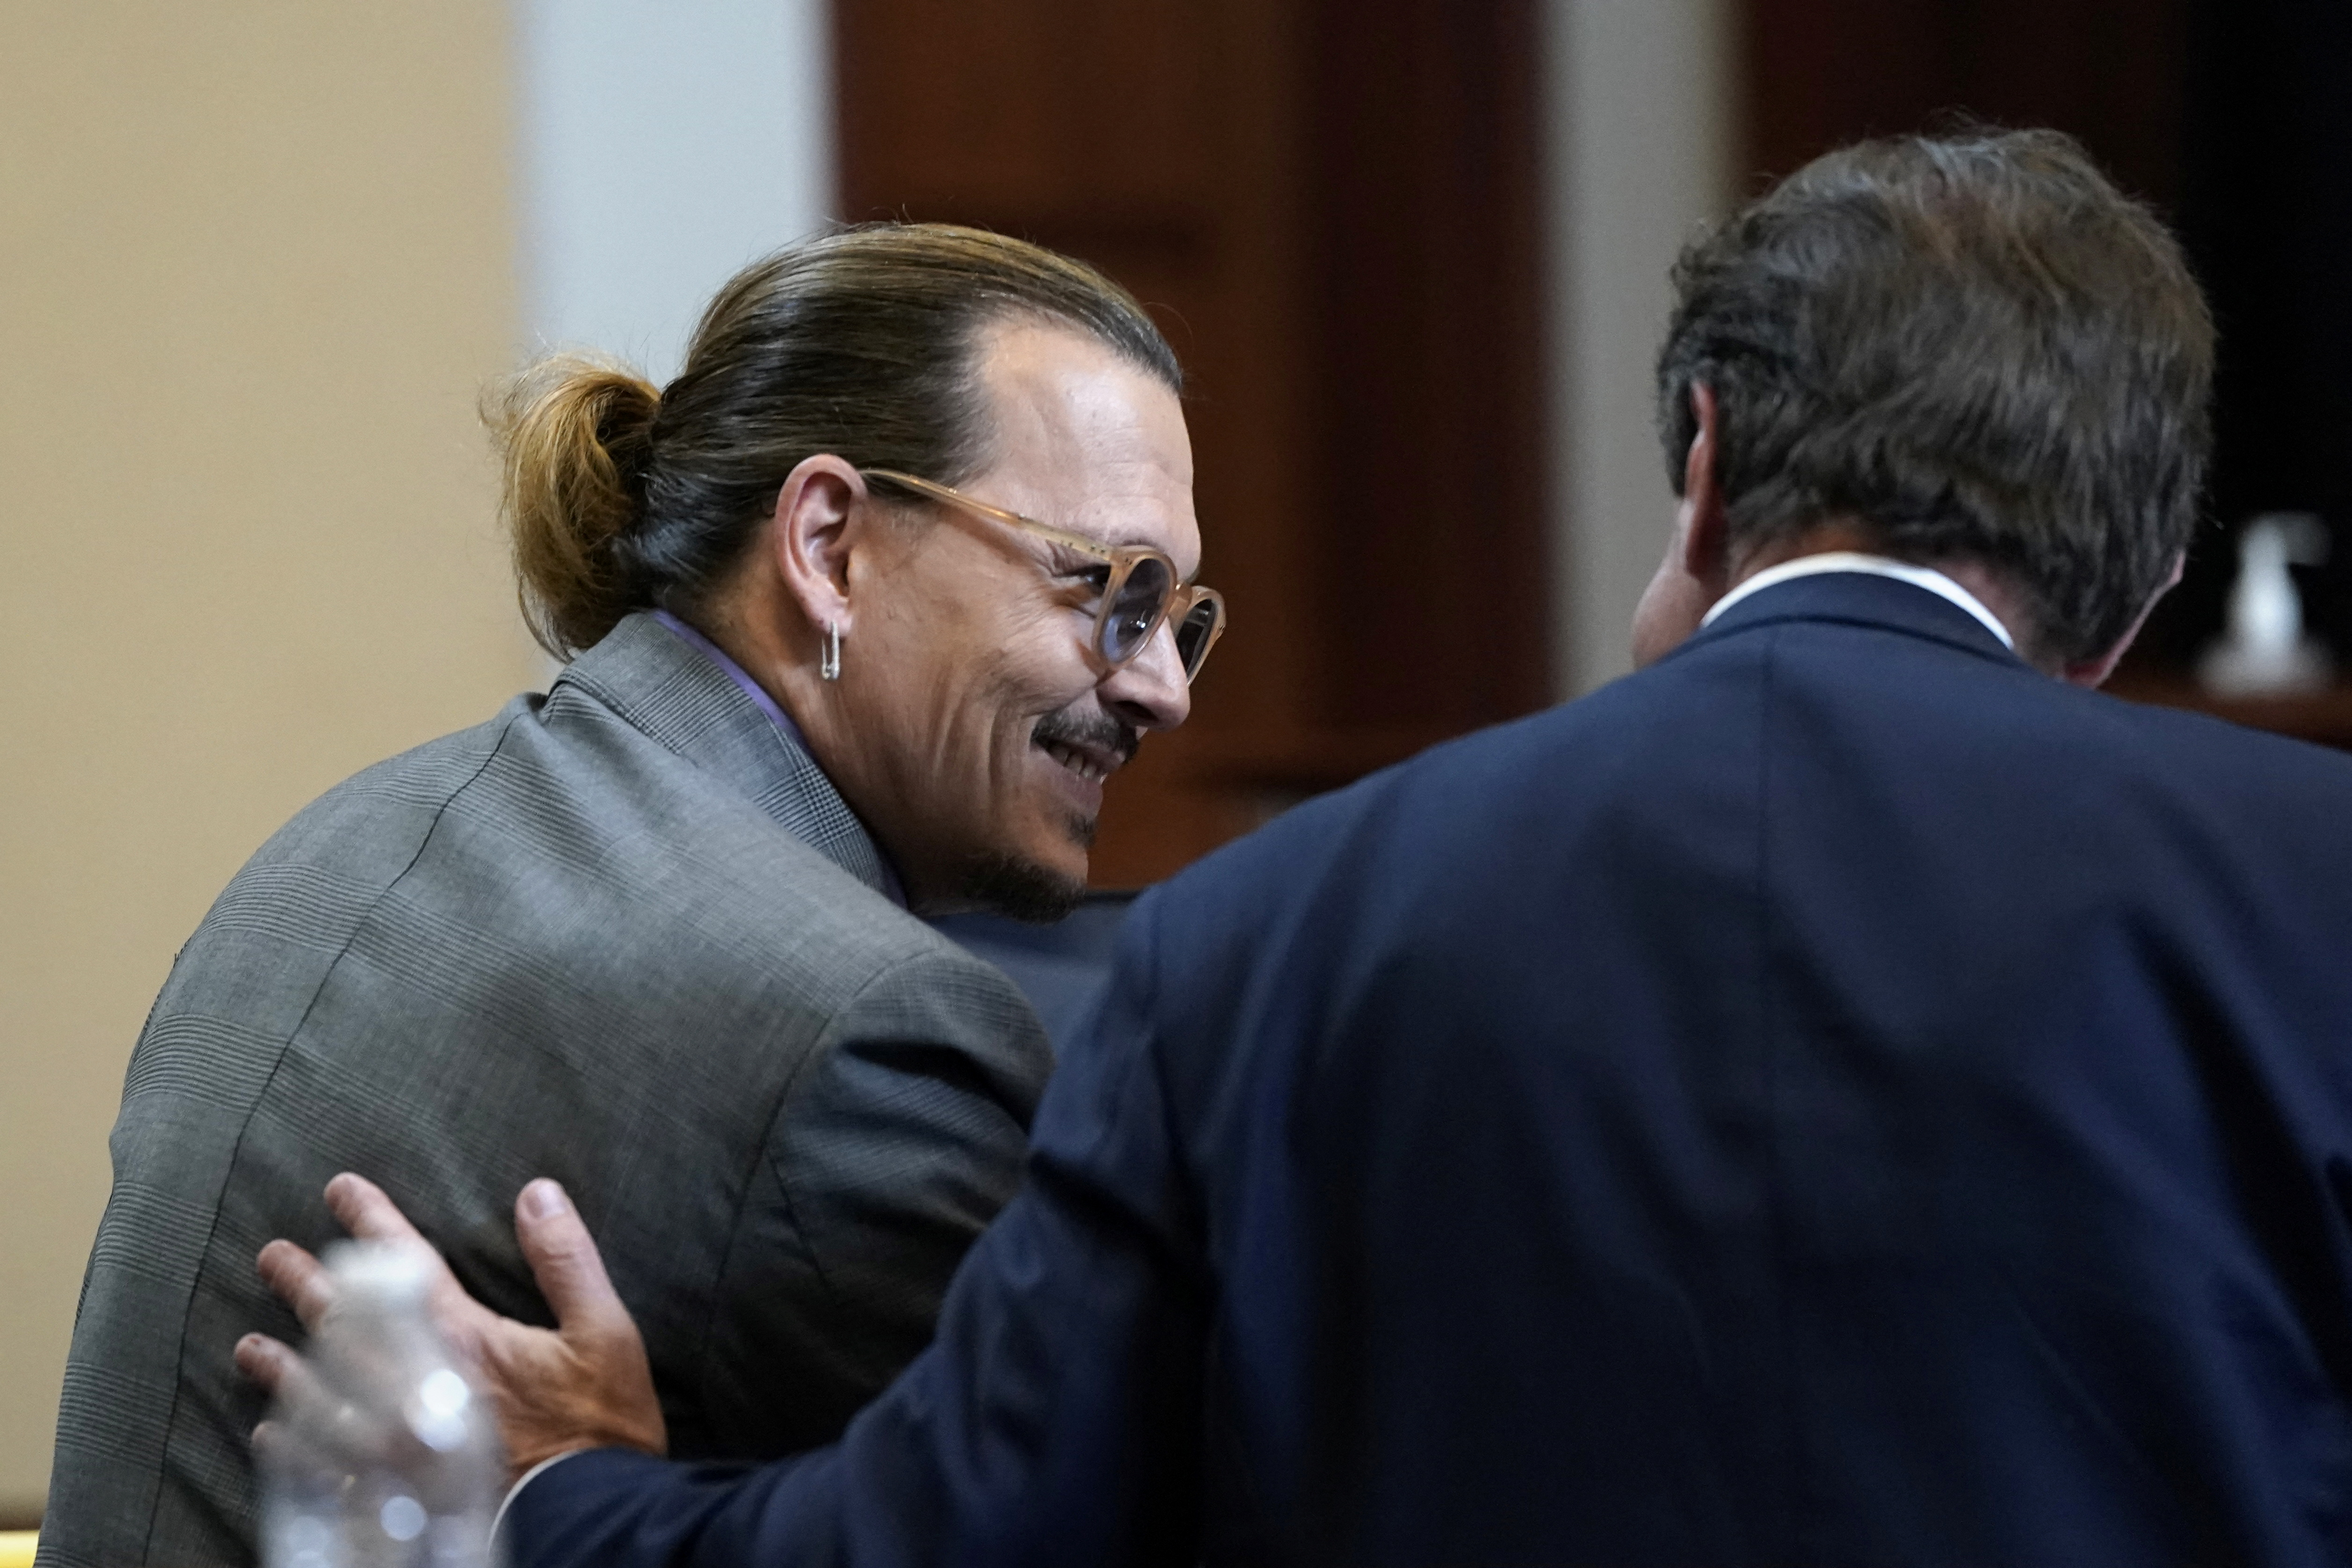 Johnny no ha observado a Heard durante el juicio (Foto: REUTERS/Elizabeth Frantz/Pool)